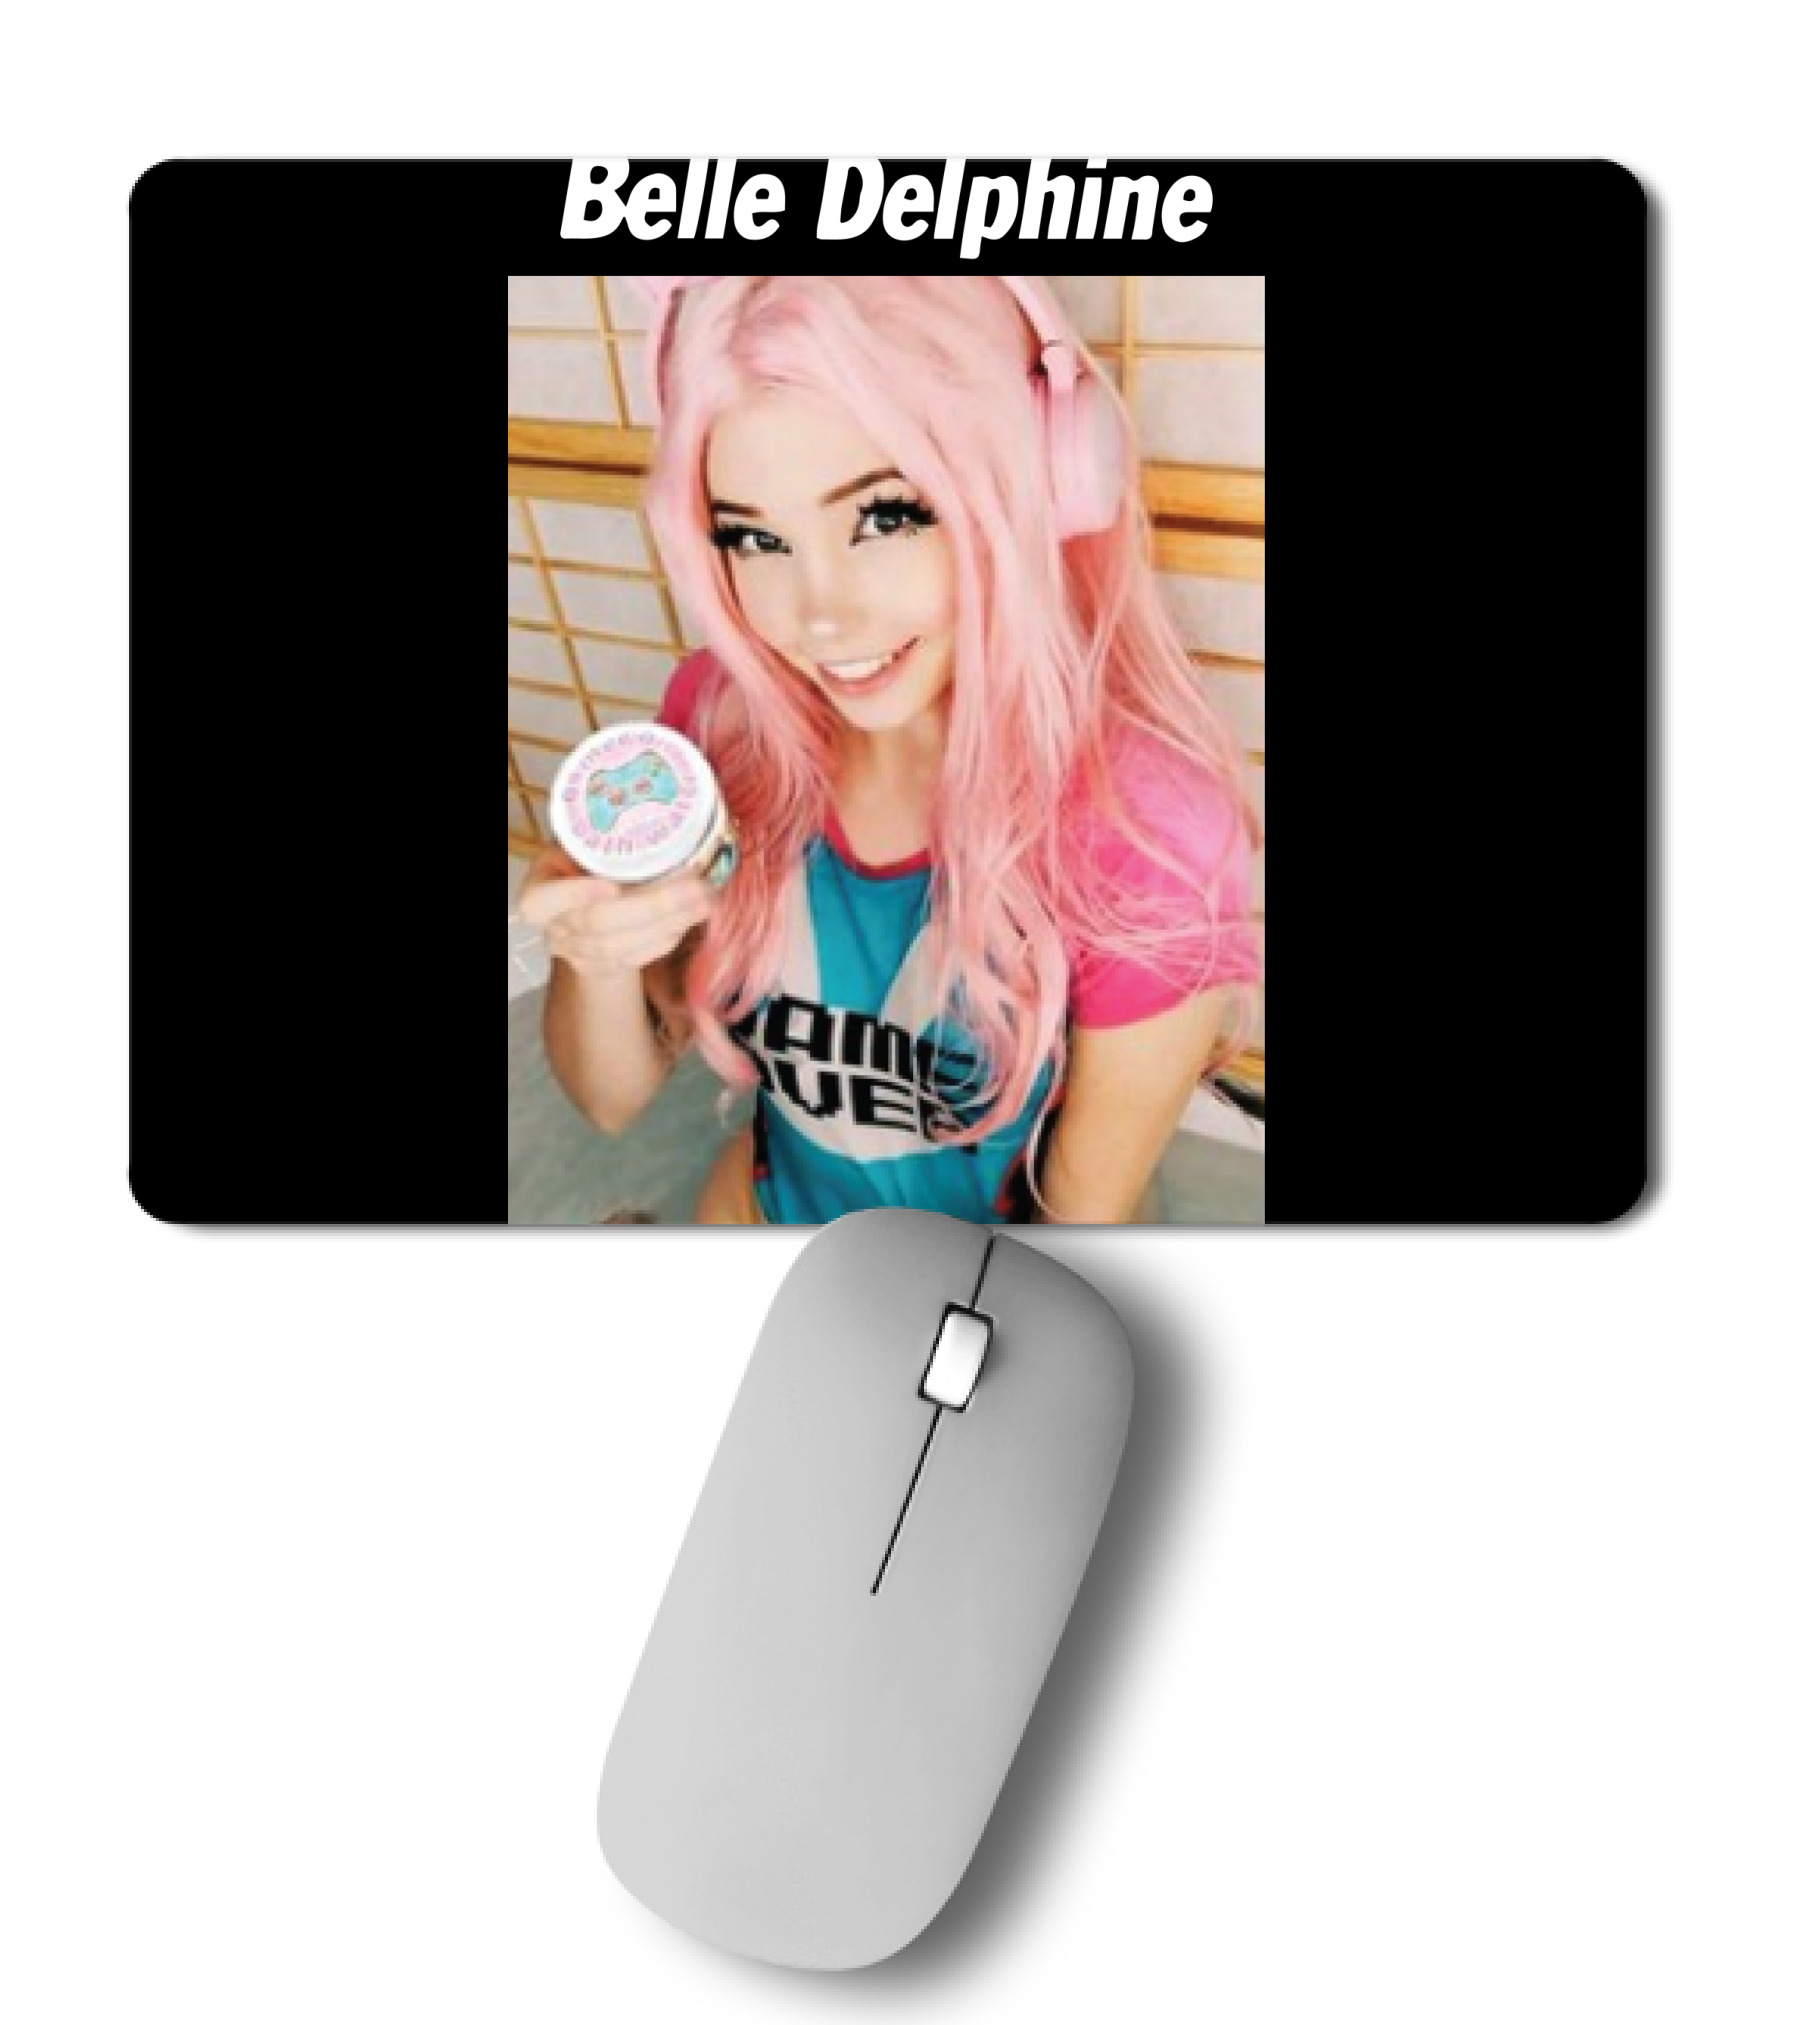 alex kacrut add belle delphine mouse pad photo